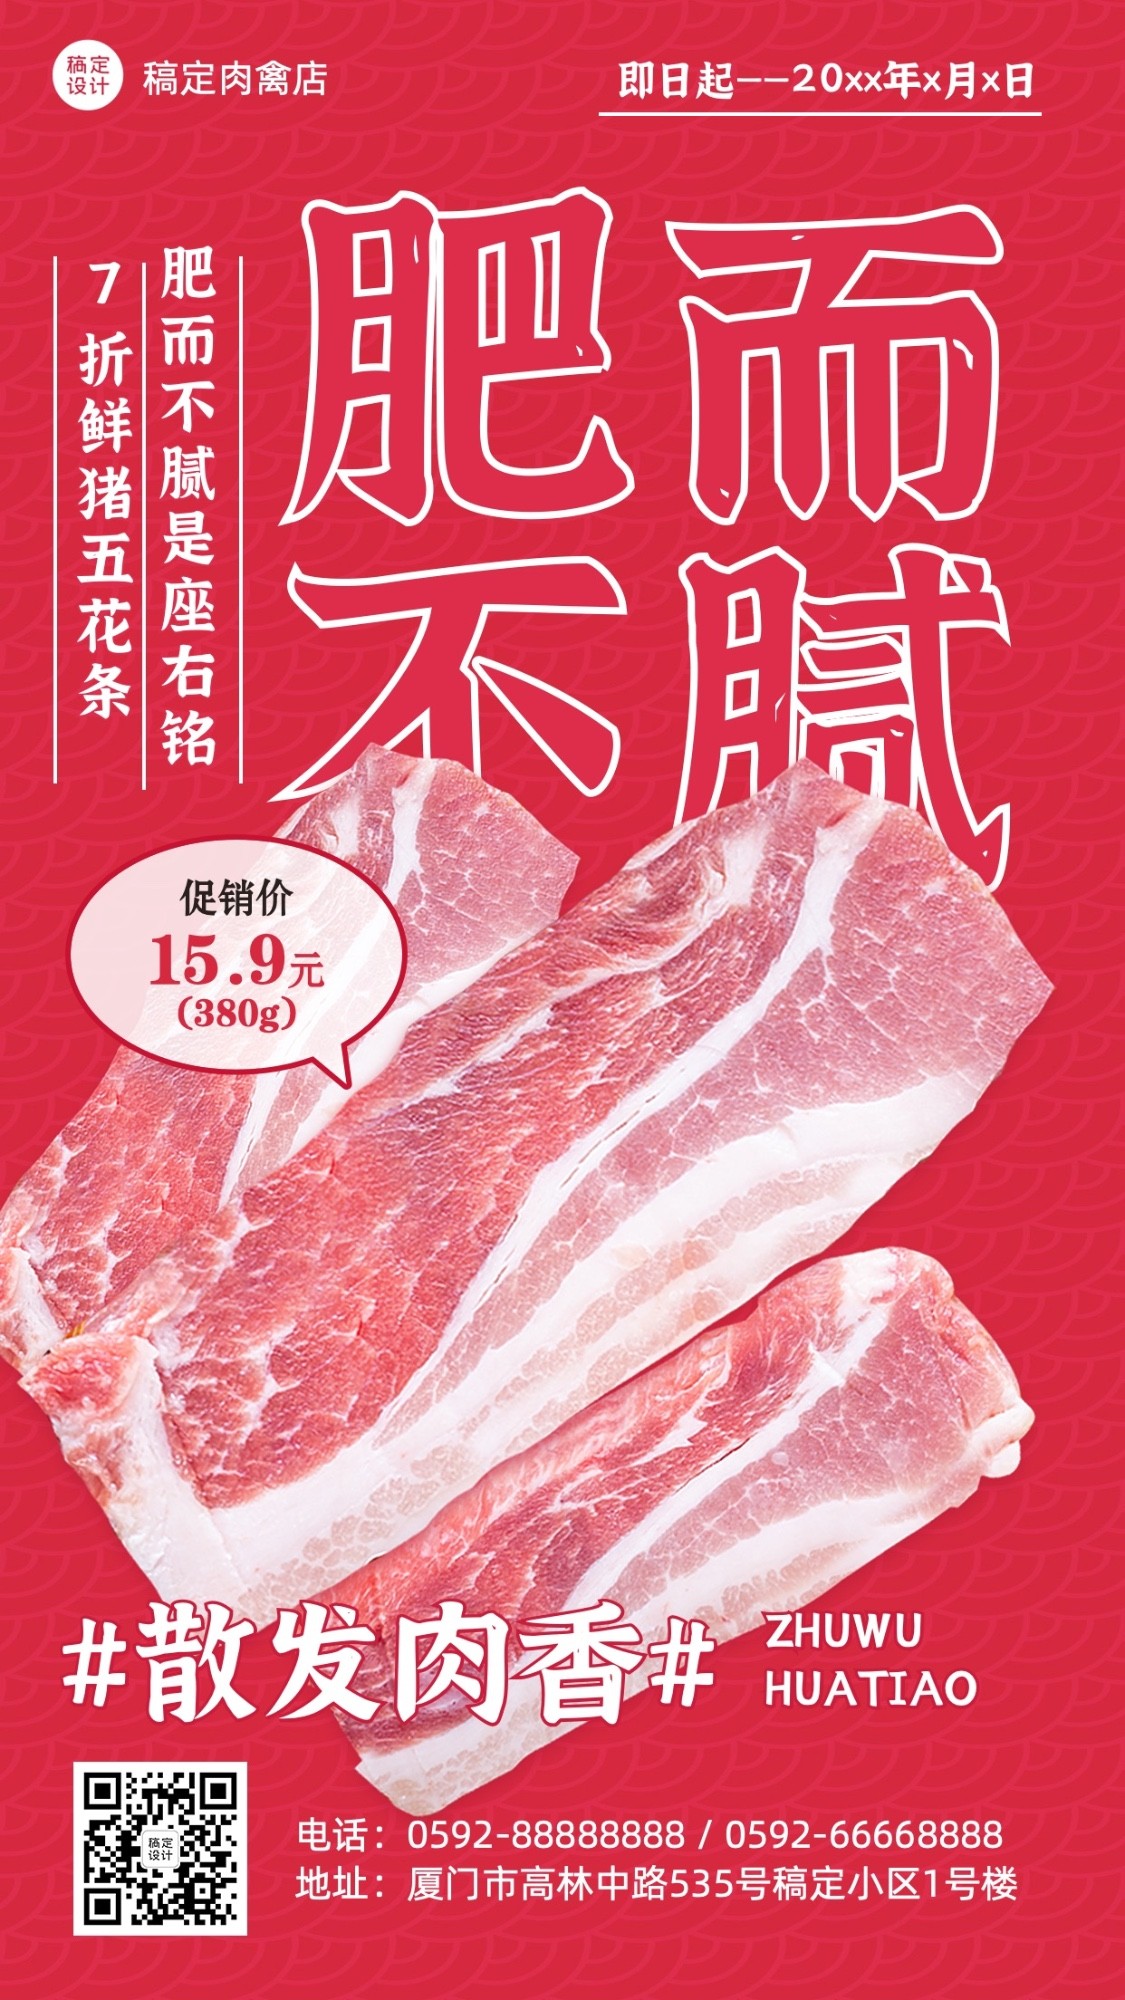 餐饮常规食品生鲜肉蛋禽涮肉竖版海报套系预览效果